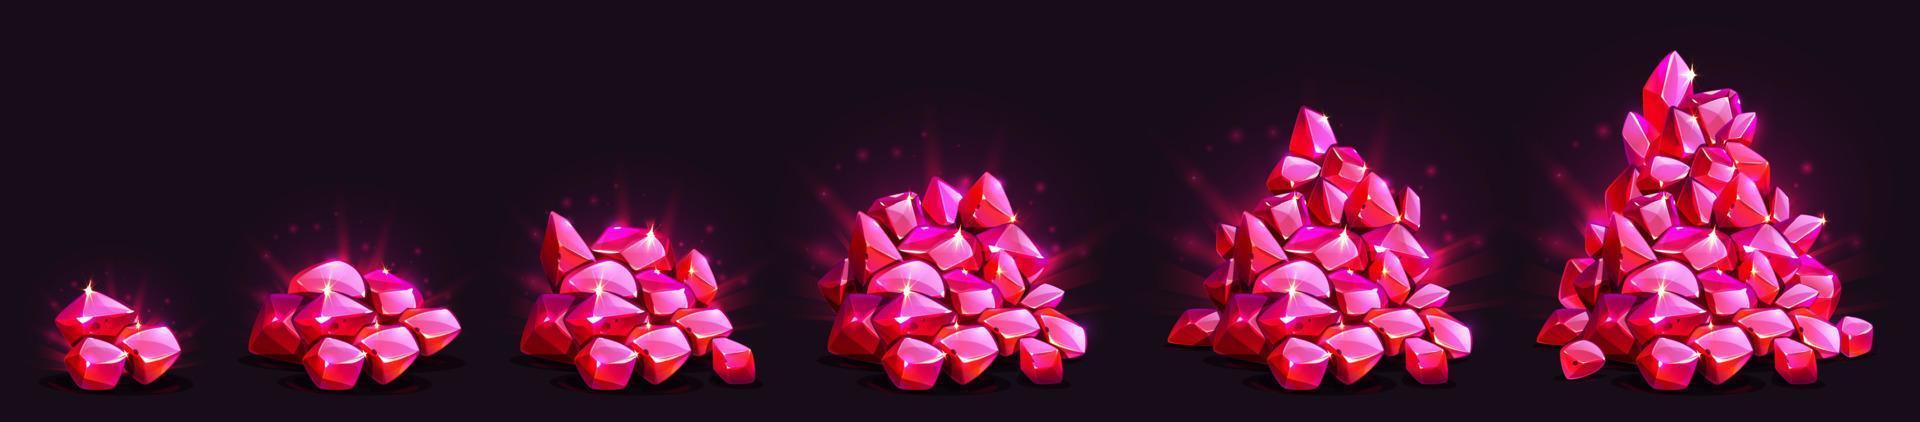 wachsender stapel von edelsteinkristallen, spiel rot leuchtende edelsteine vektor